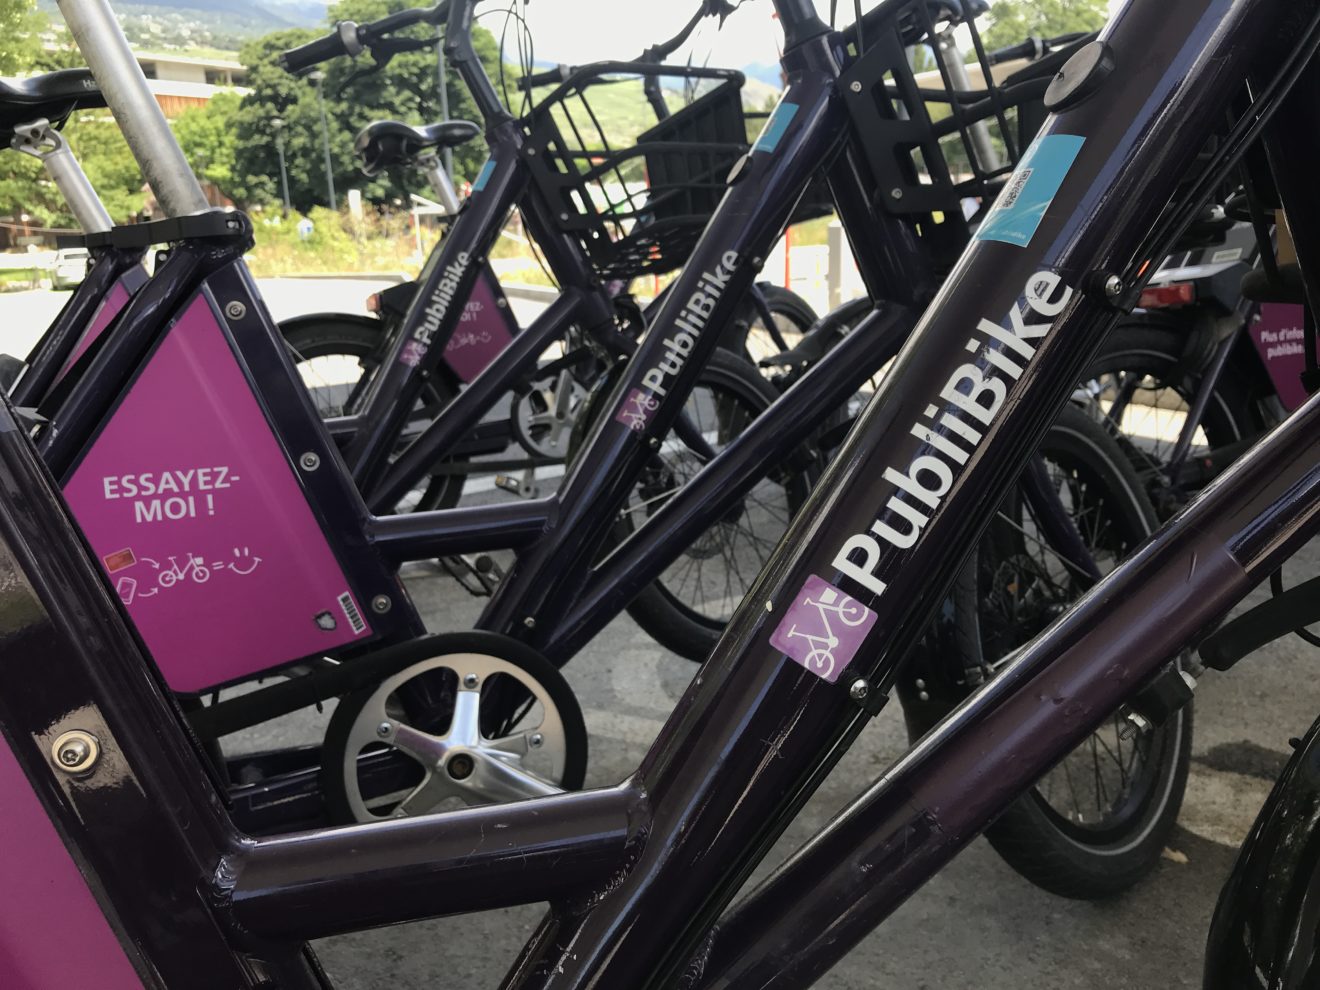 PubliBike et intermobility créent le plus grand réseau de partage de vélos de Suisse